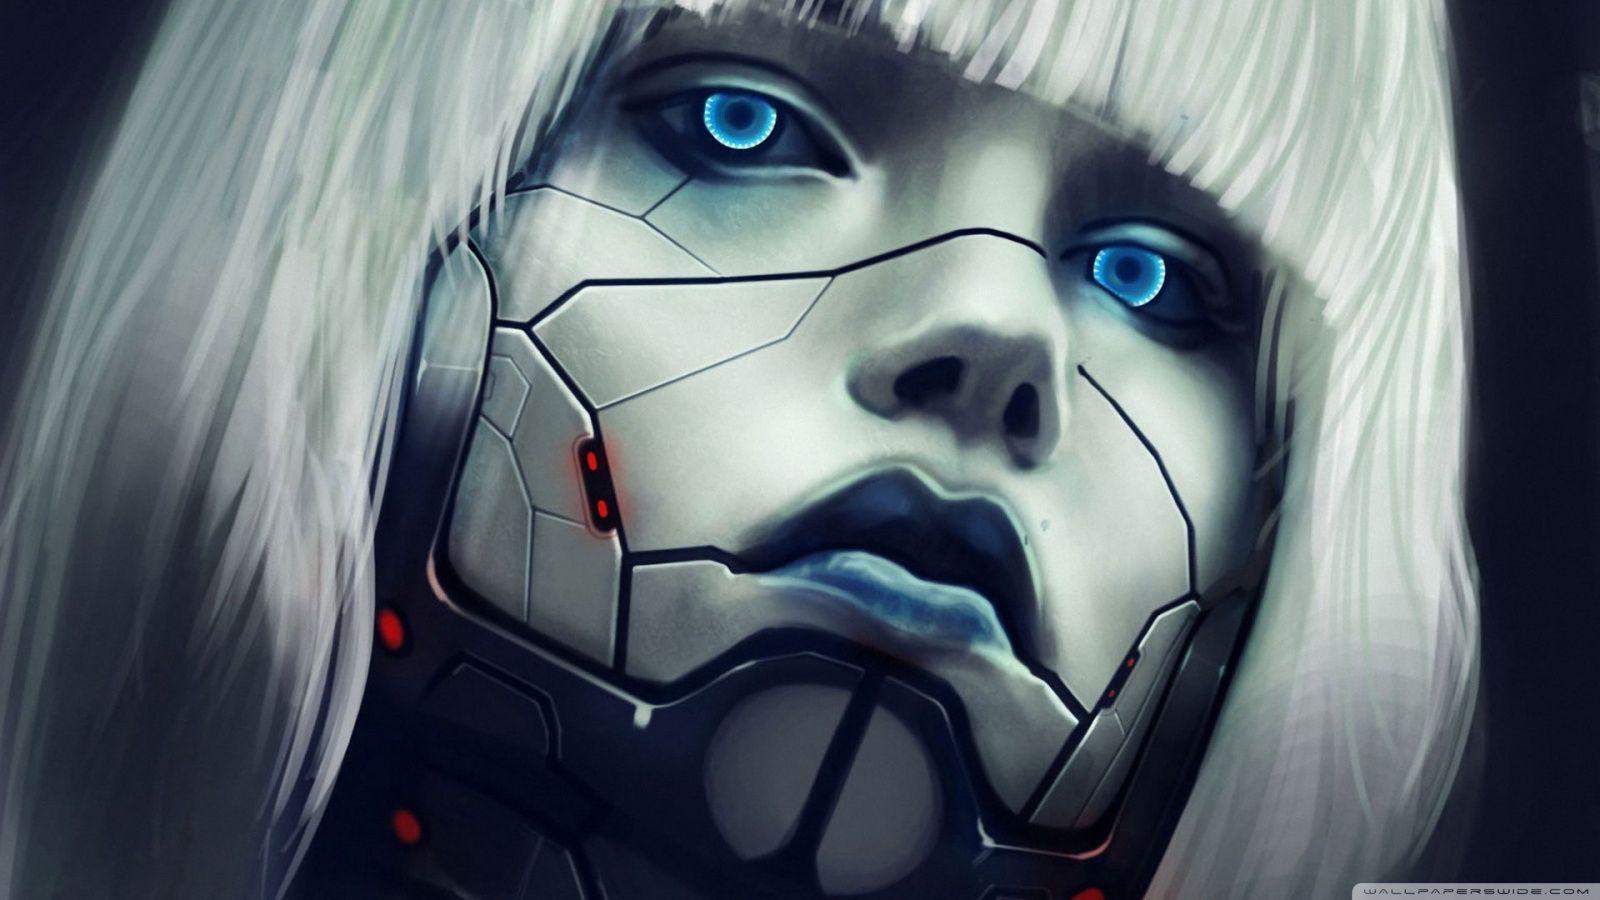 Robot Face HD desktop wallpaper, High Definition, Mobile. Cyberpunk art, Cyborg girl, Cyberpunk